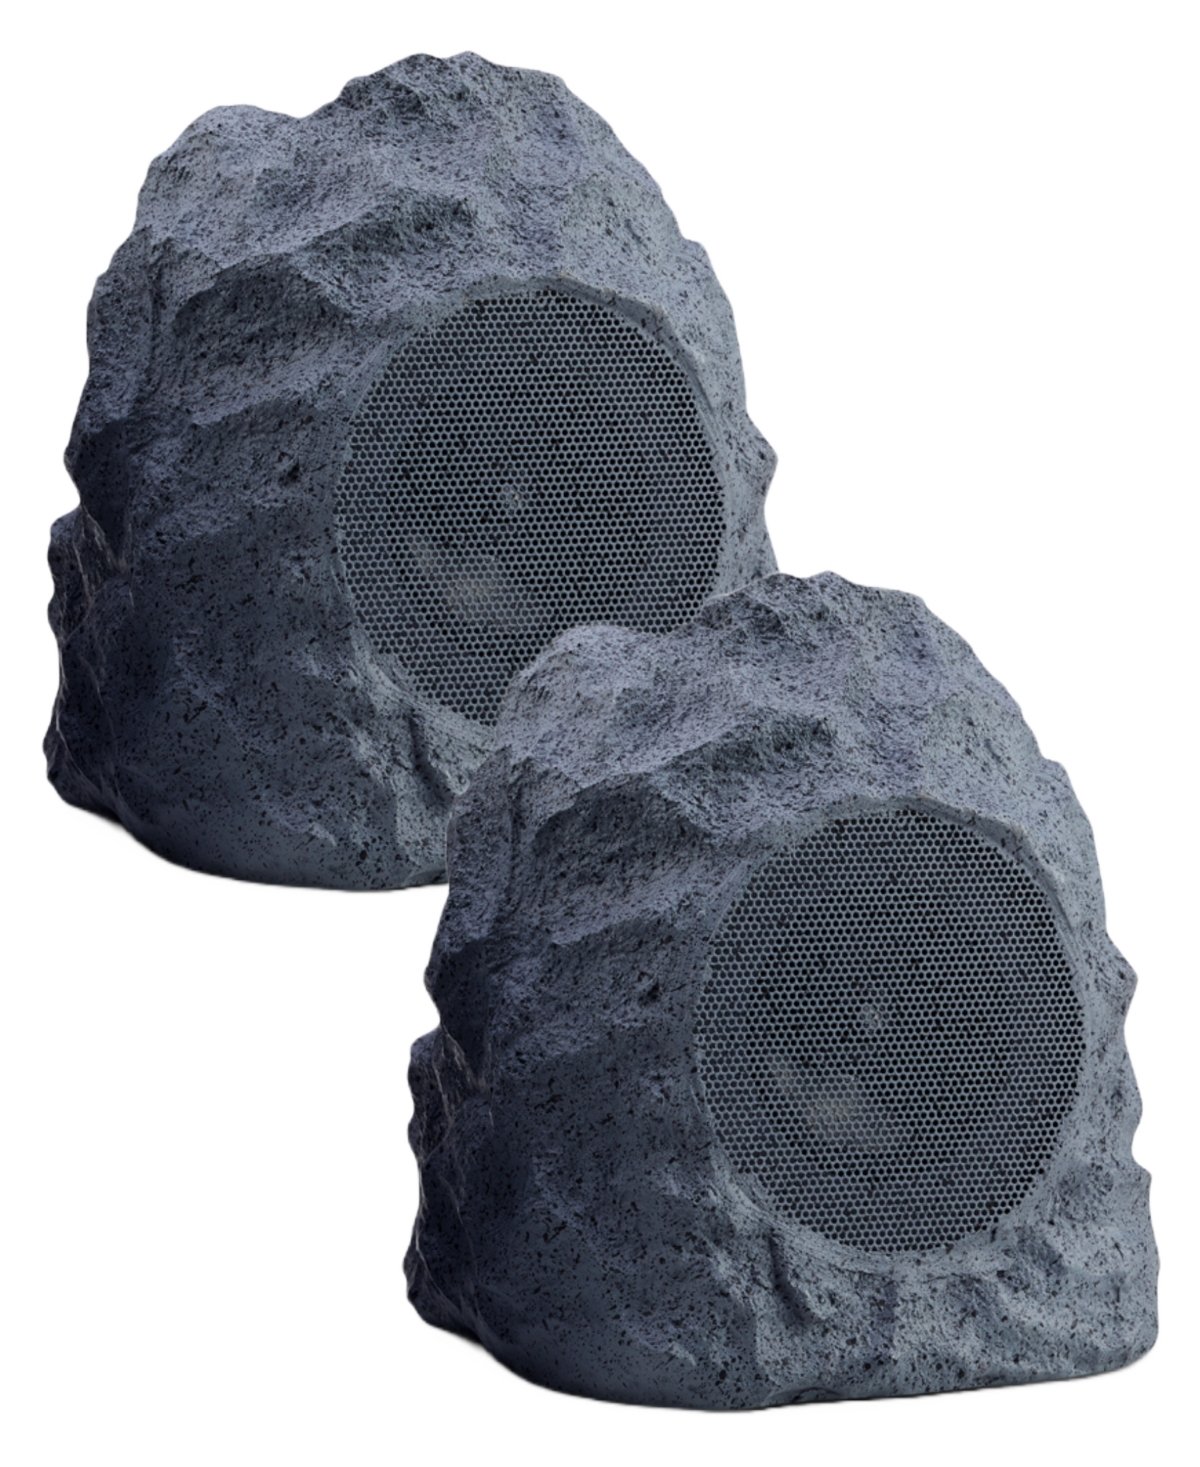 Ihome Ihrk-400-pr Wireless Landscape Rock Speaker Set, 2 Piece In Gray